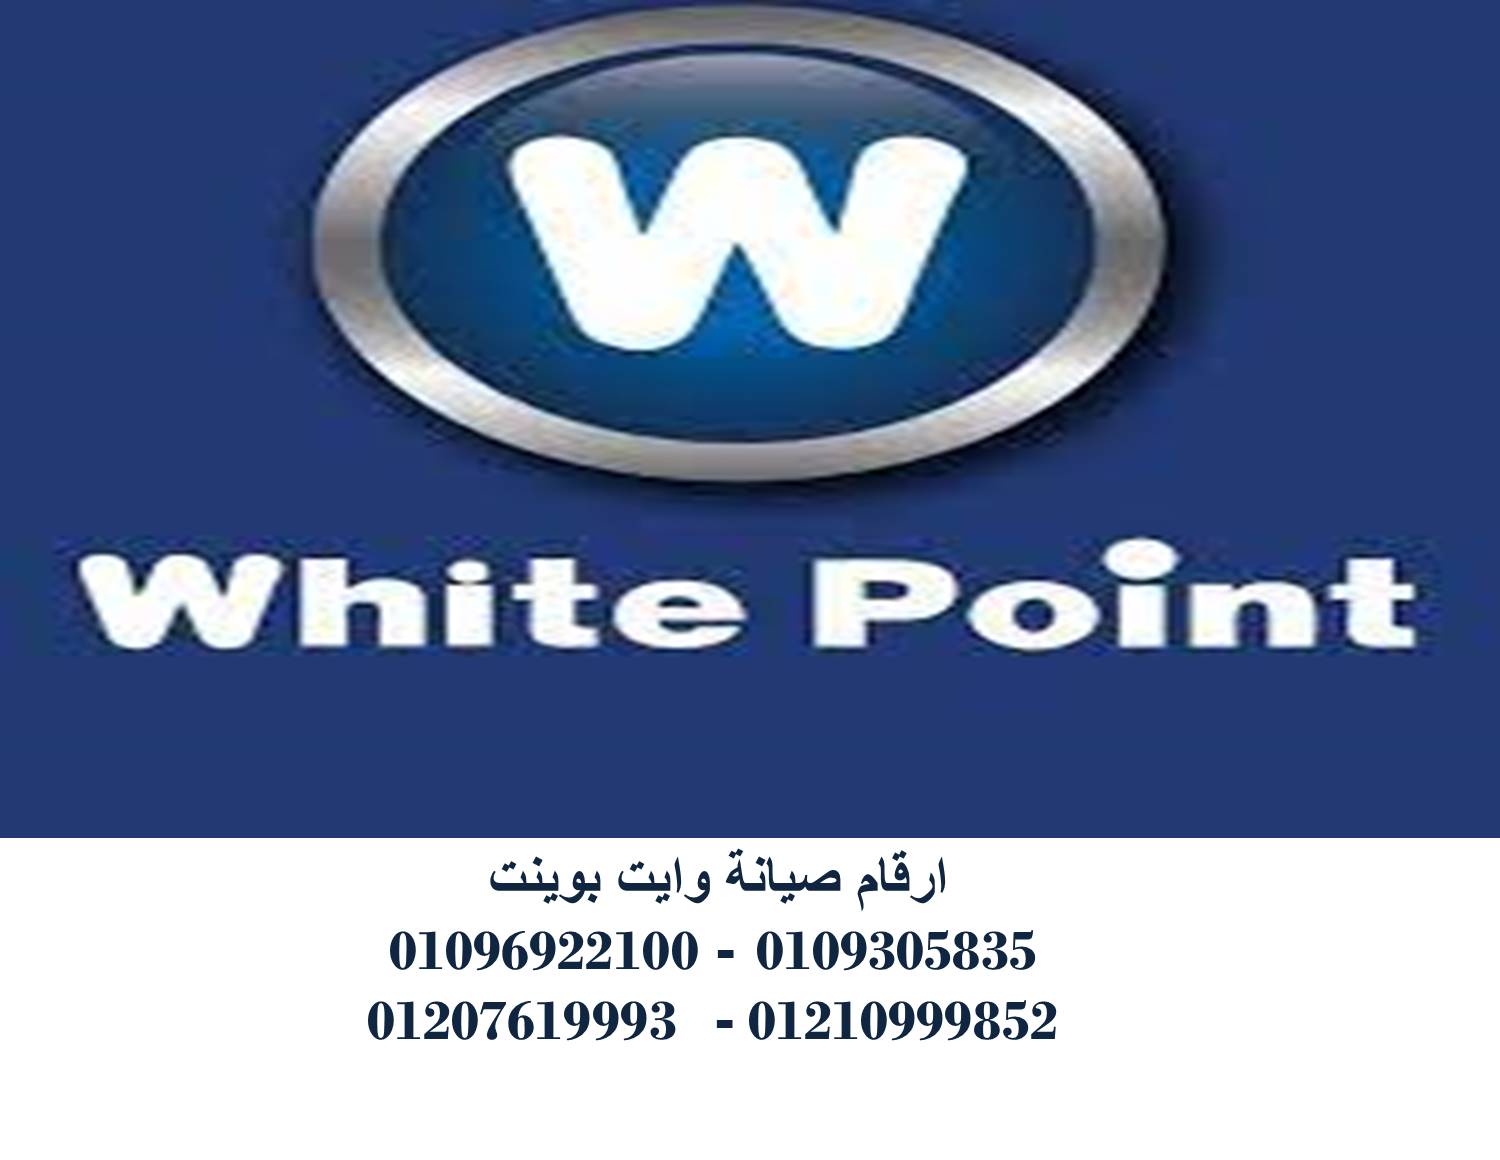 بلاغ عطل غسالات وايت بوينت مشتول السوق 01220261030